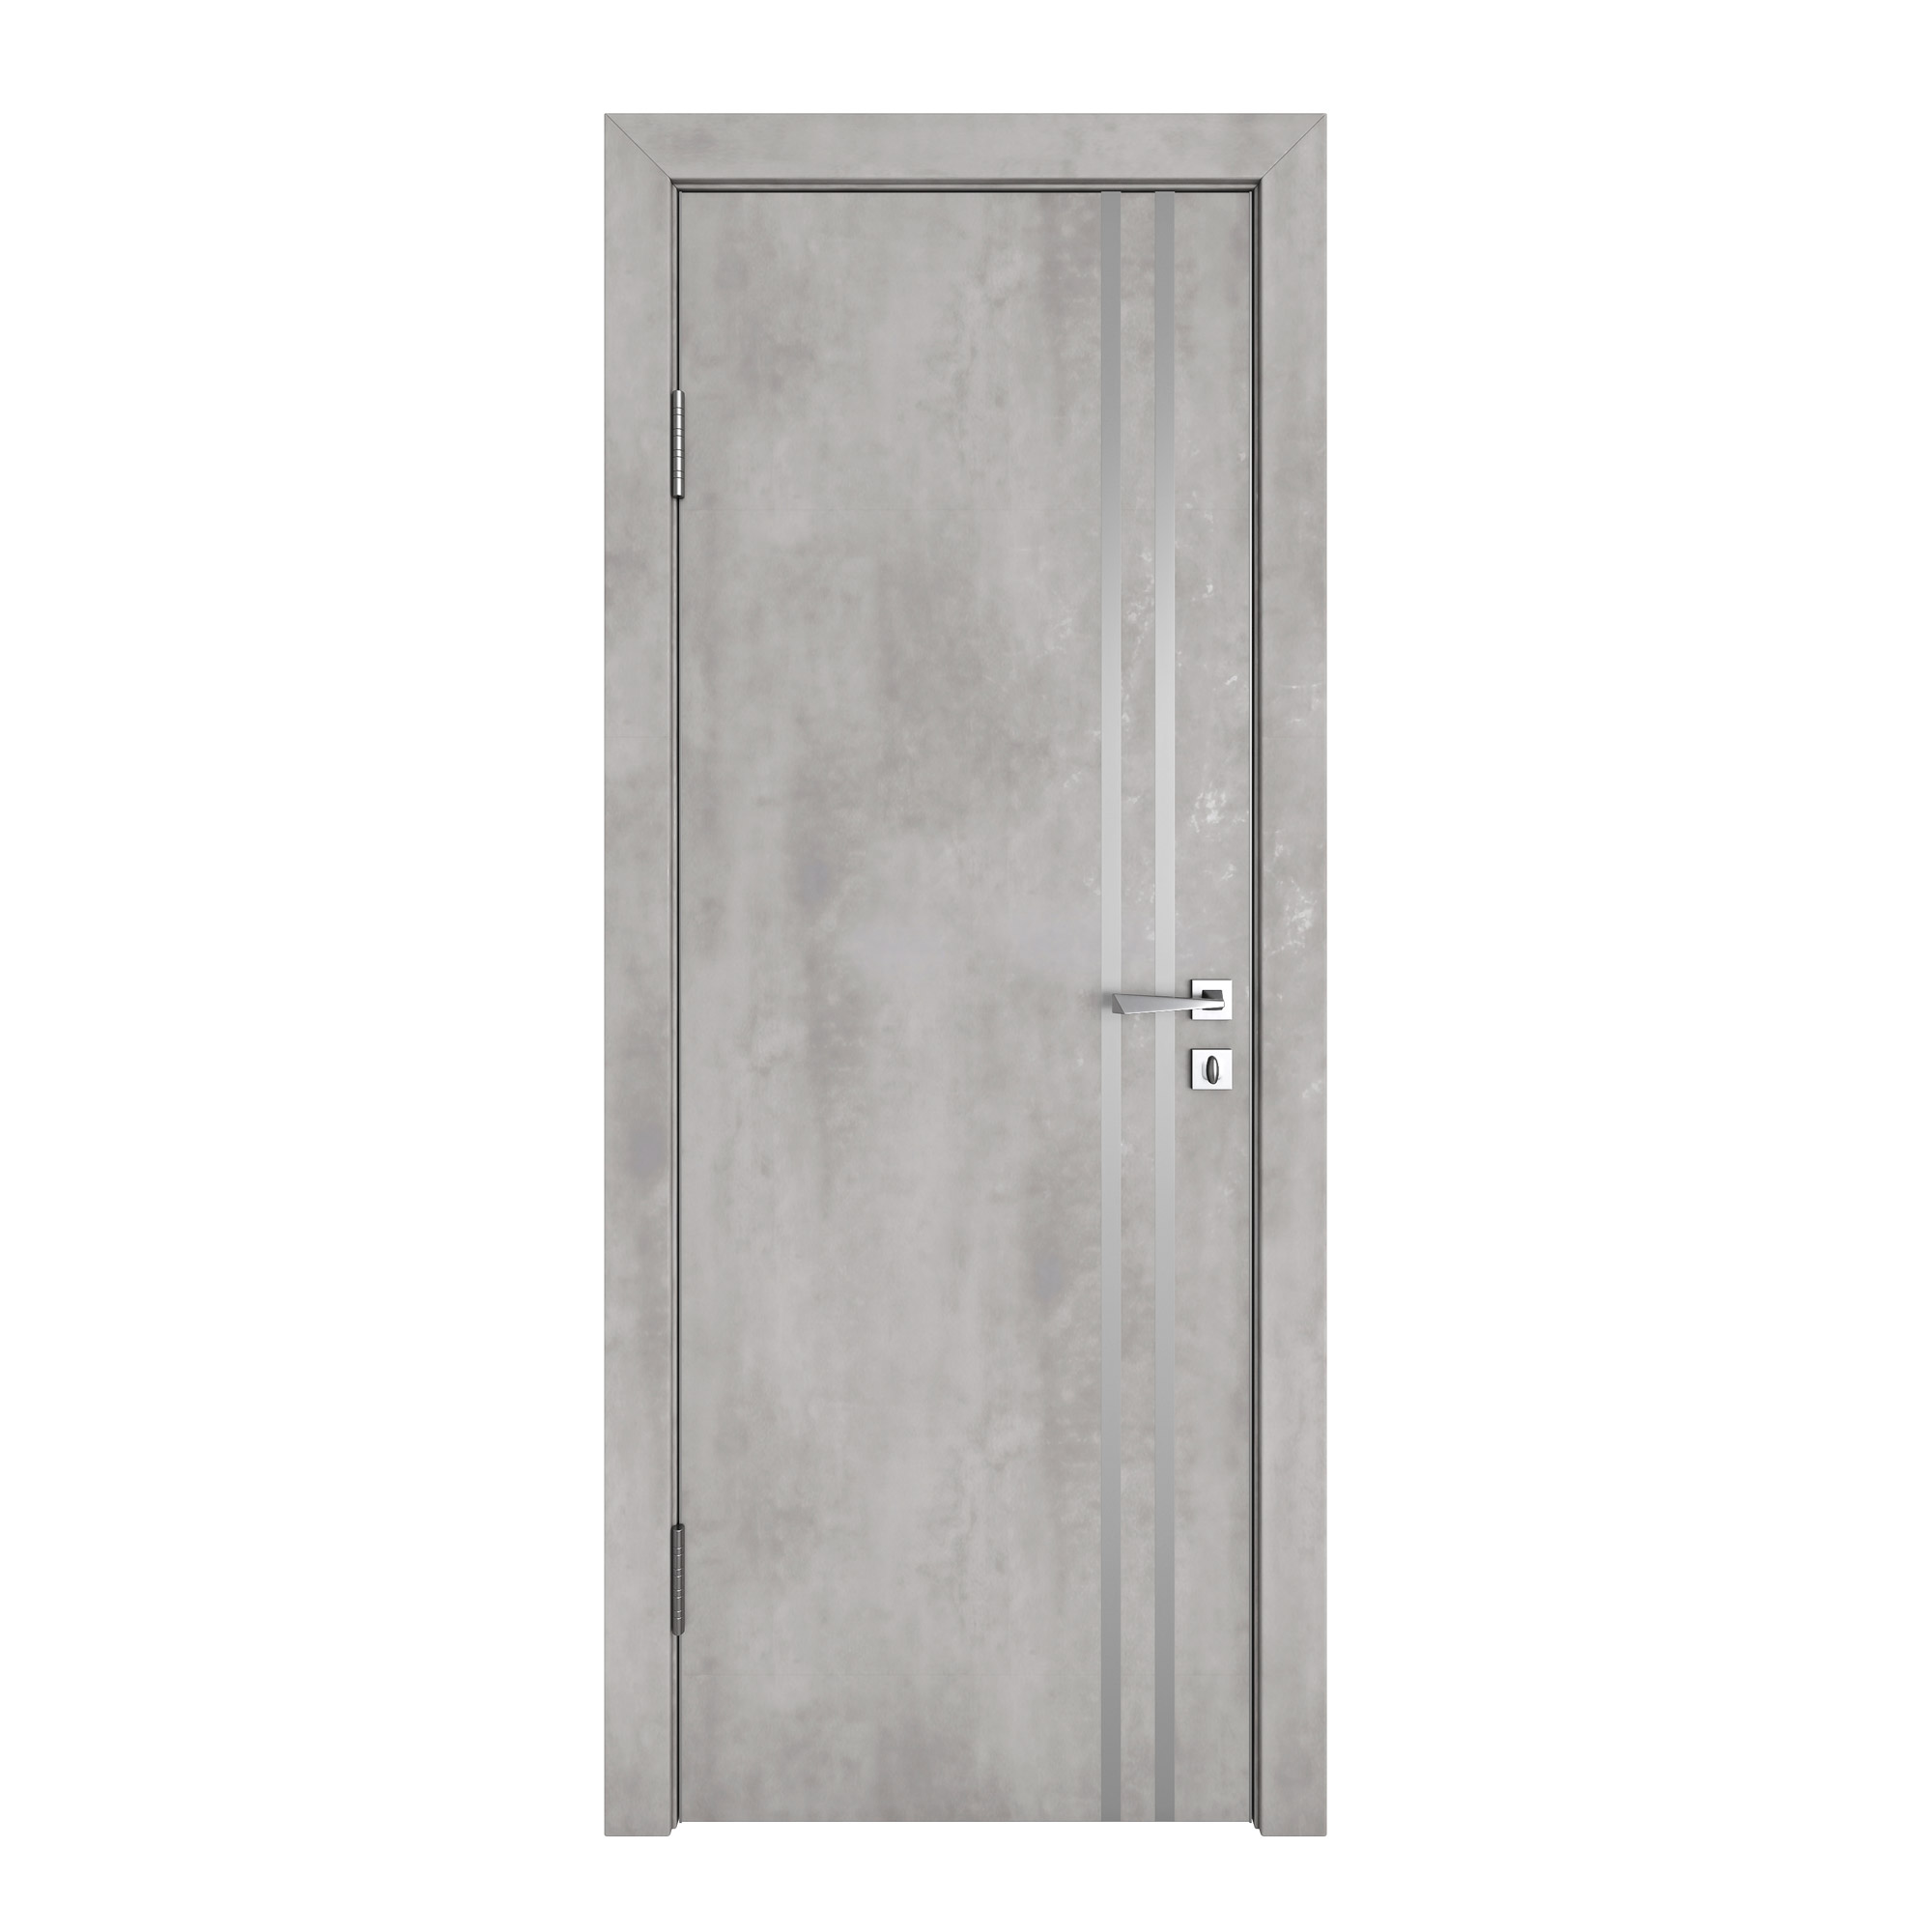 фото Межкомнатная дверь дг-506 бетон светлый 200х60 дверная линия